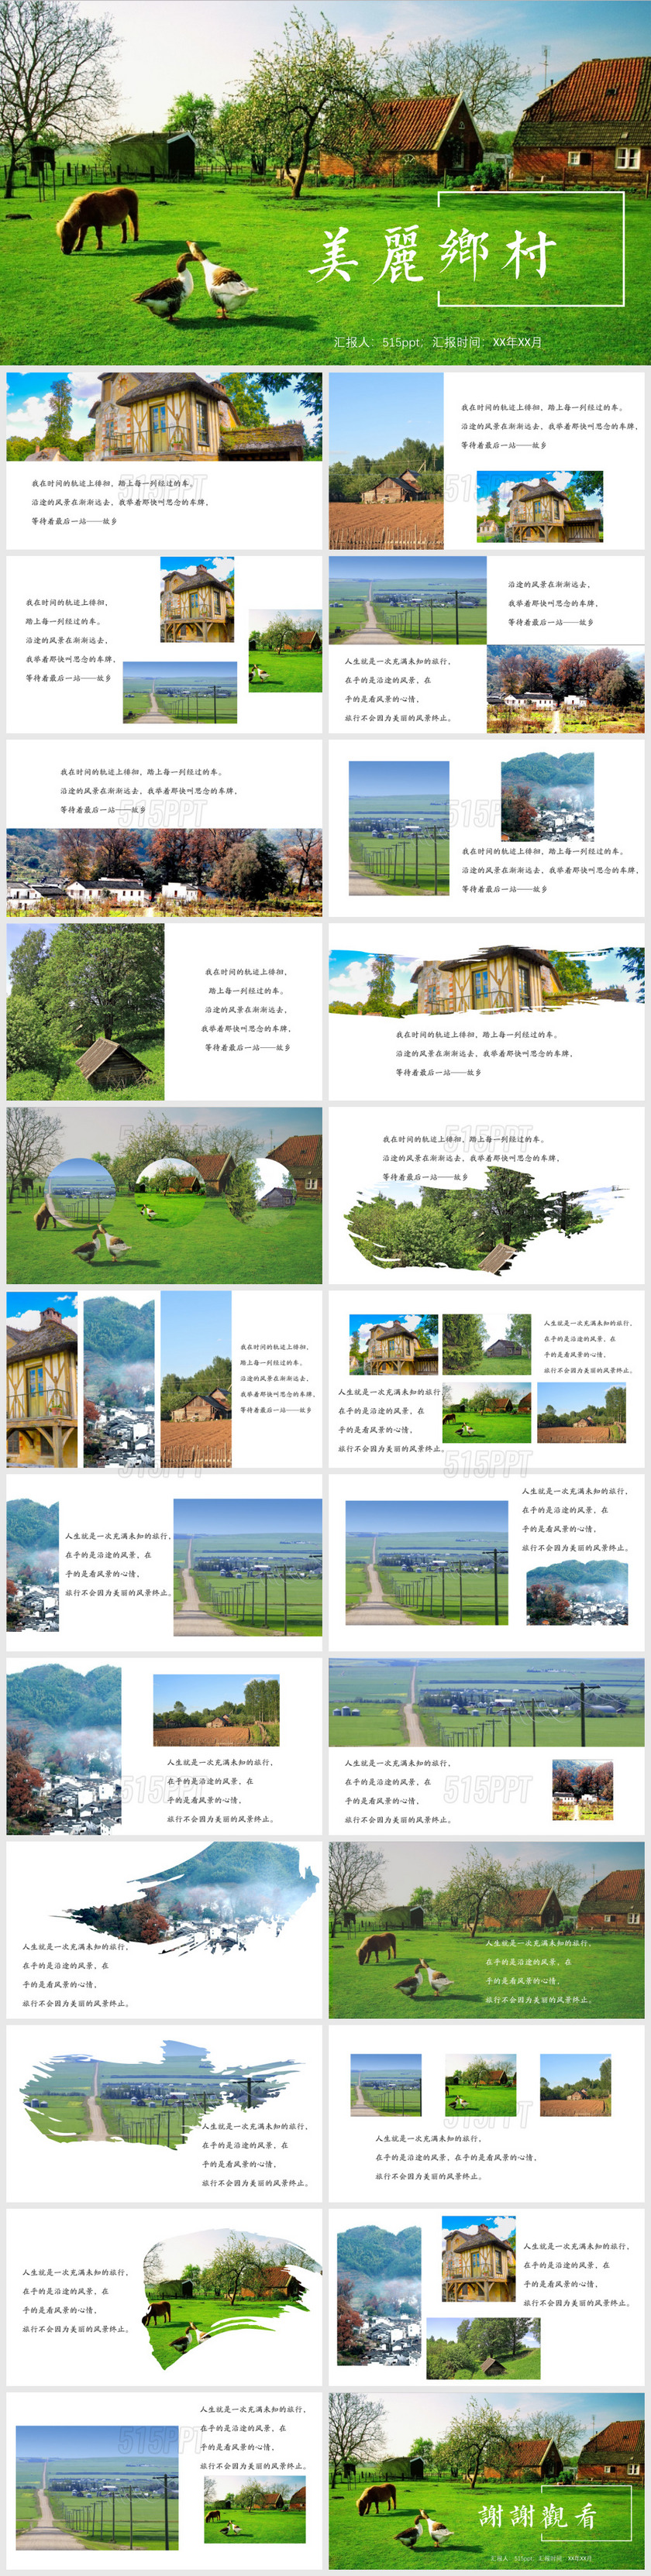 绿色清新乡村旅游相册宣传PPT模板旅游宣传一